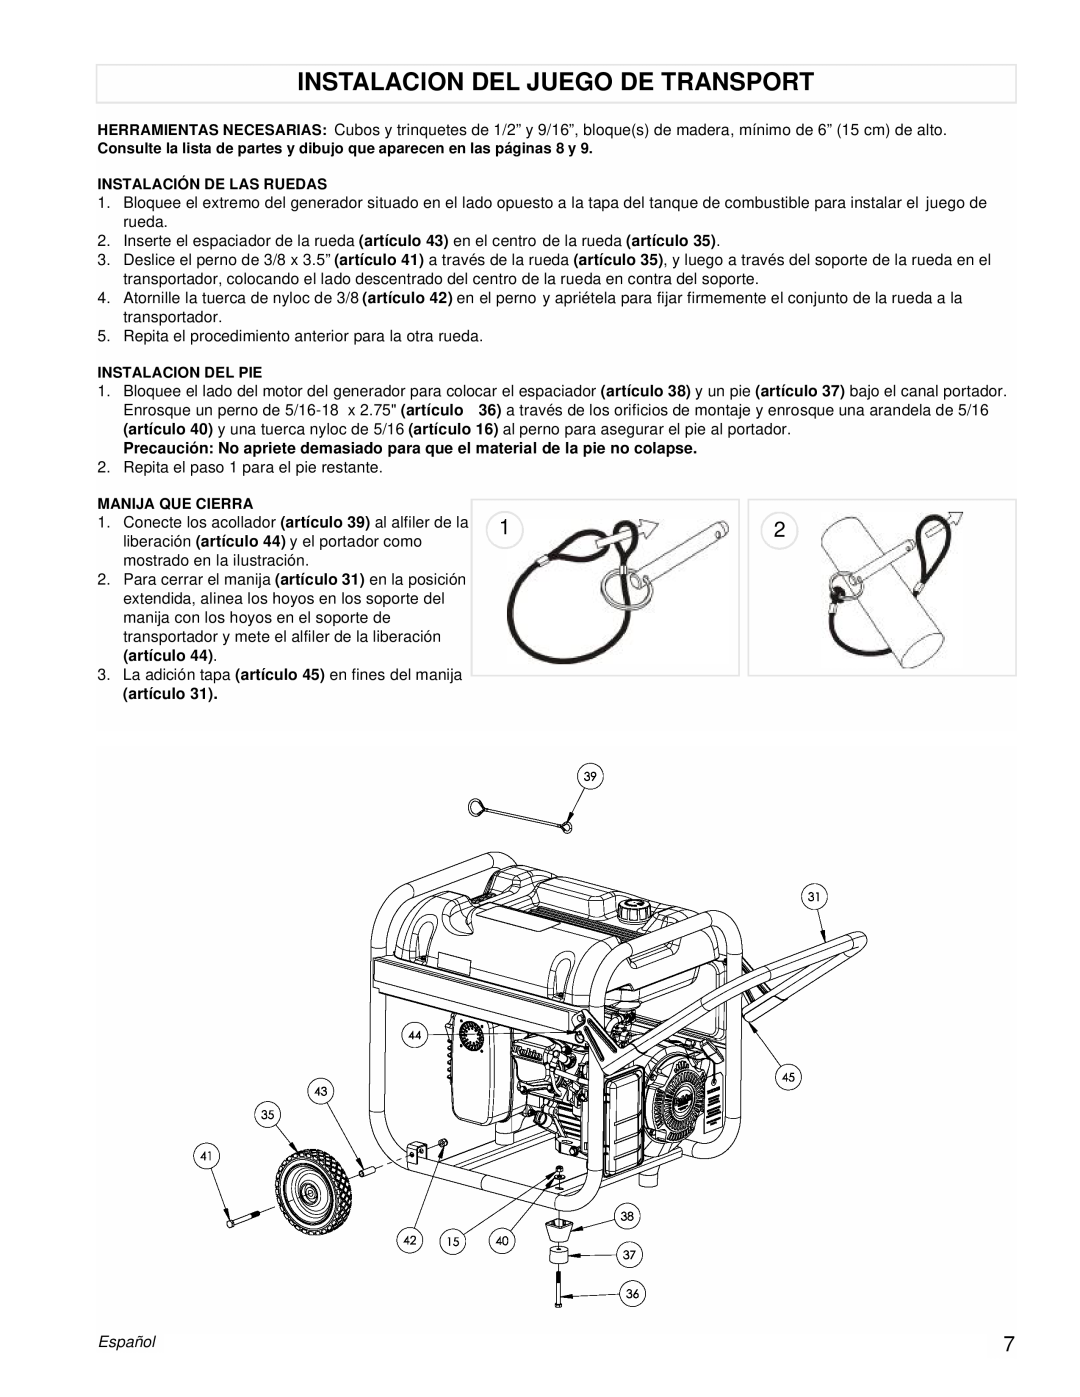 Powermate PM0435003 manual Instalacion Del Juego De Transport, artículo, Español 